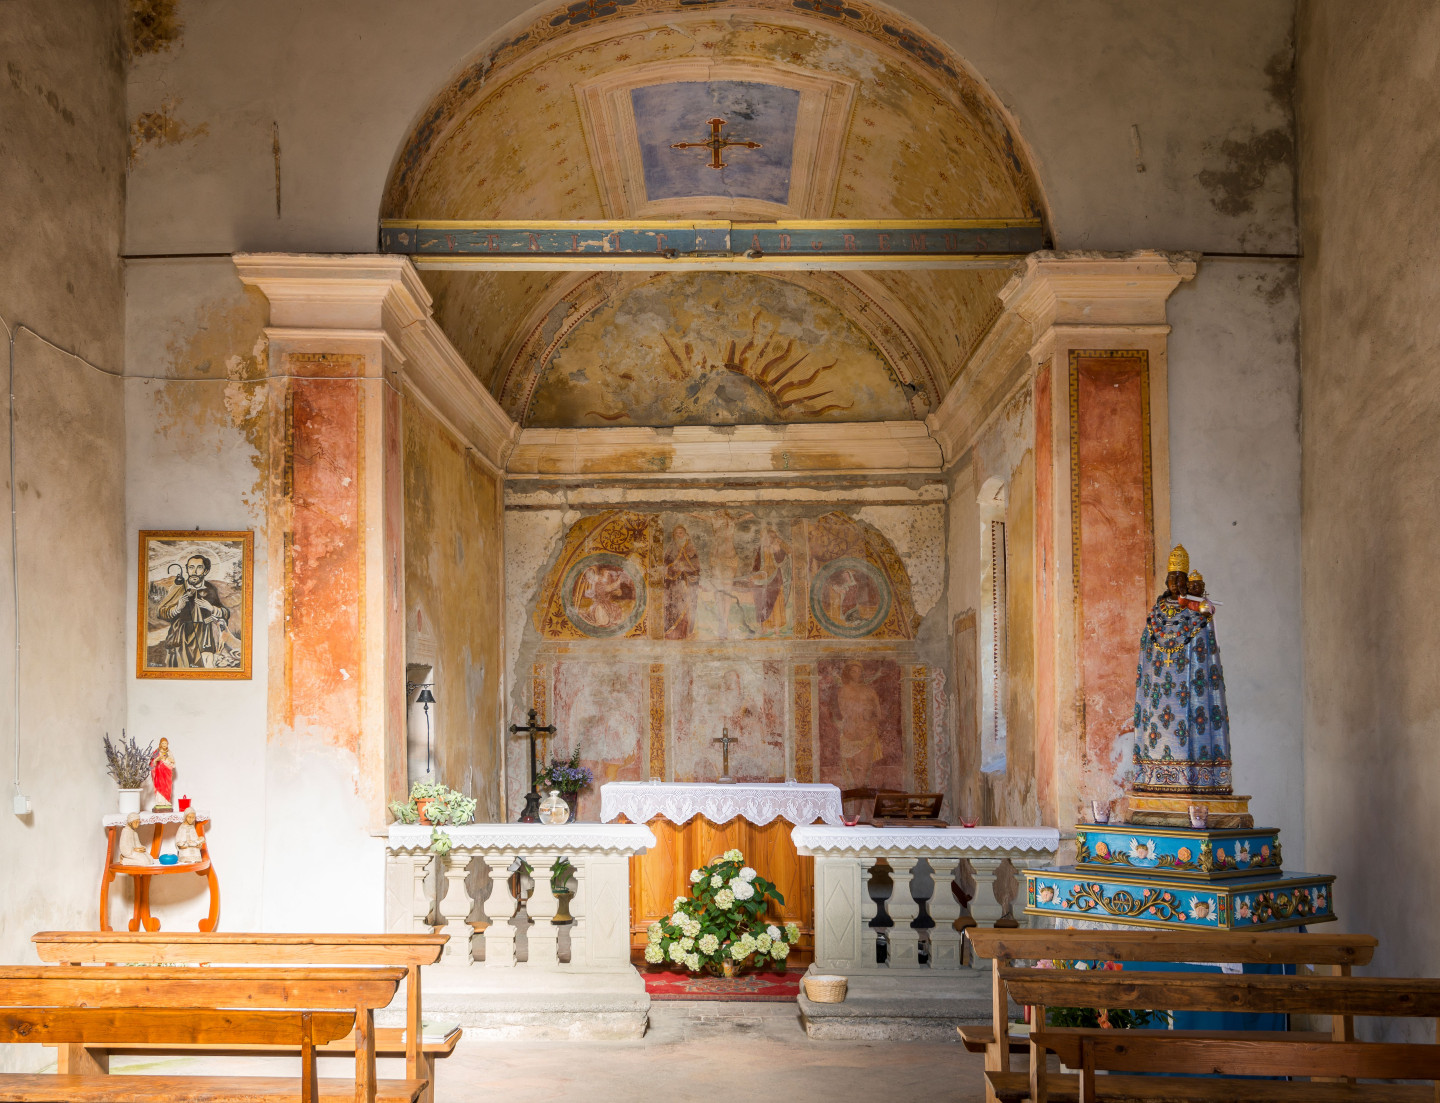 Gli affreschi del presbitero sono purtroppo danneggiati da infiltrazioni di umidità